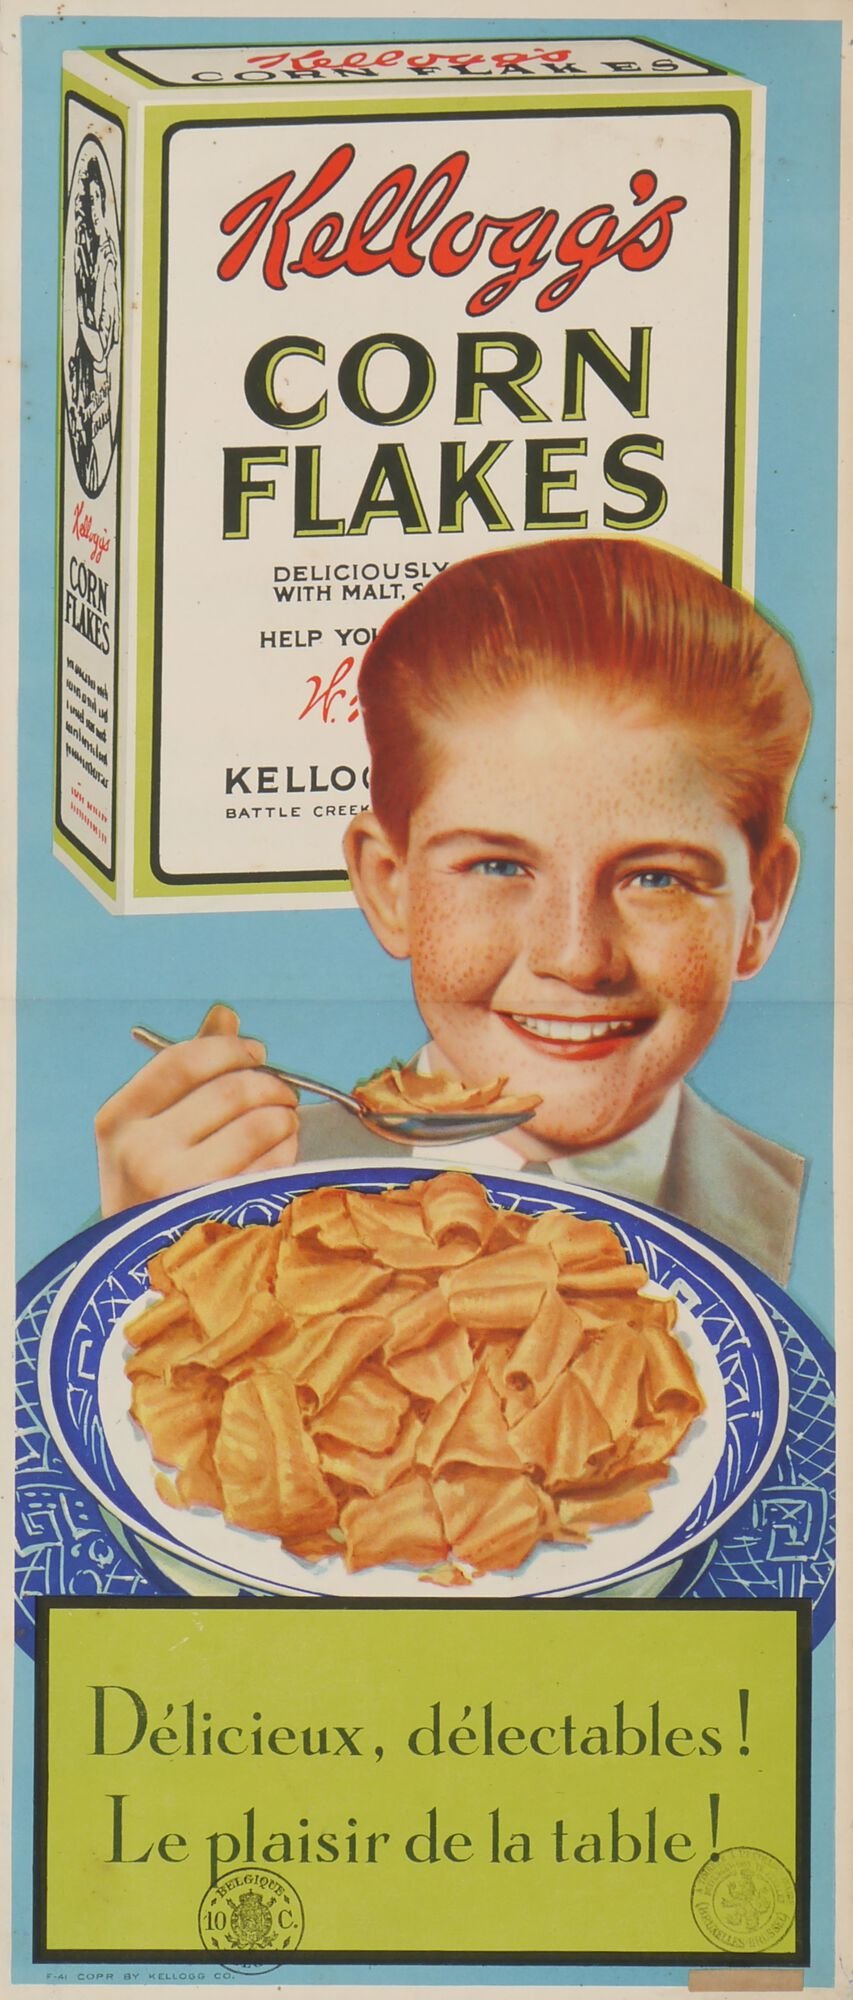 Reclameaffiche voor ontbijtgranen van het merk Kellogg's